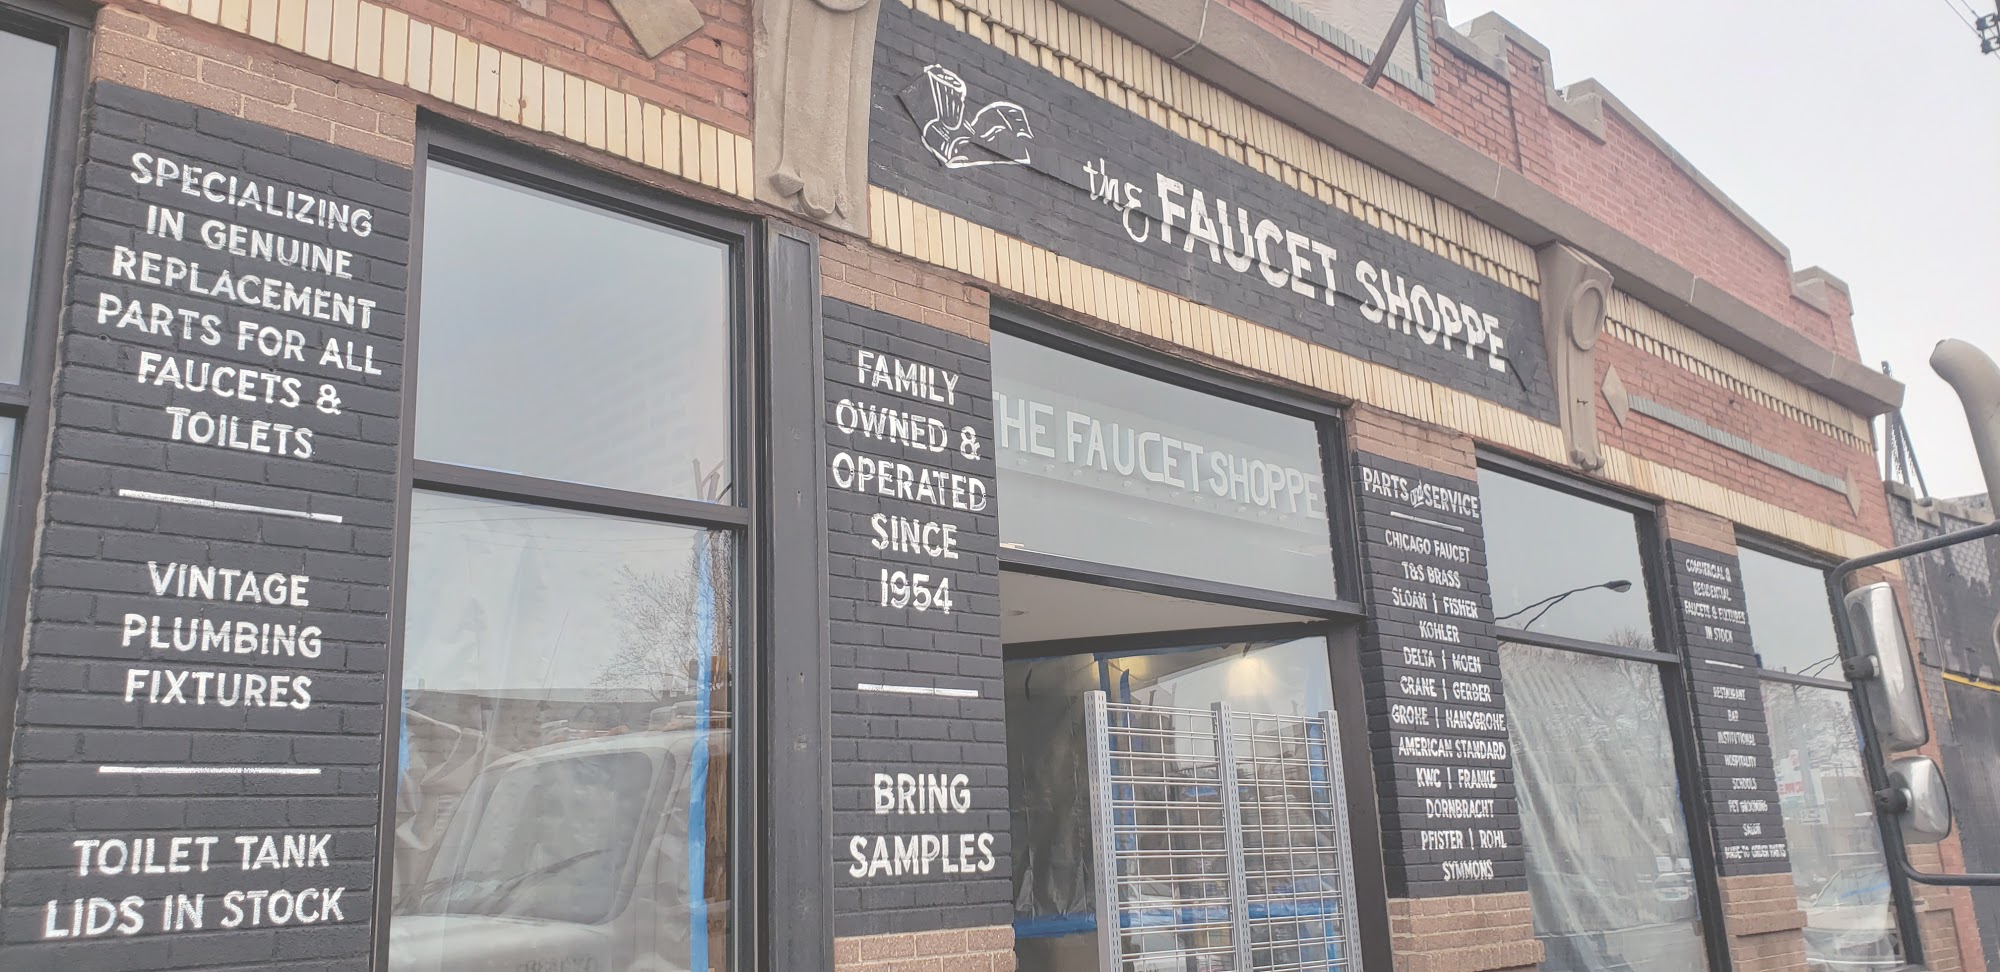 The Faucet Shoppe, Inc